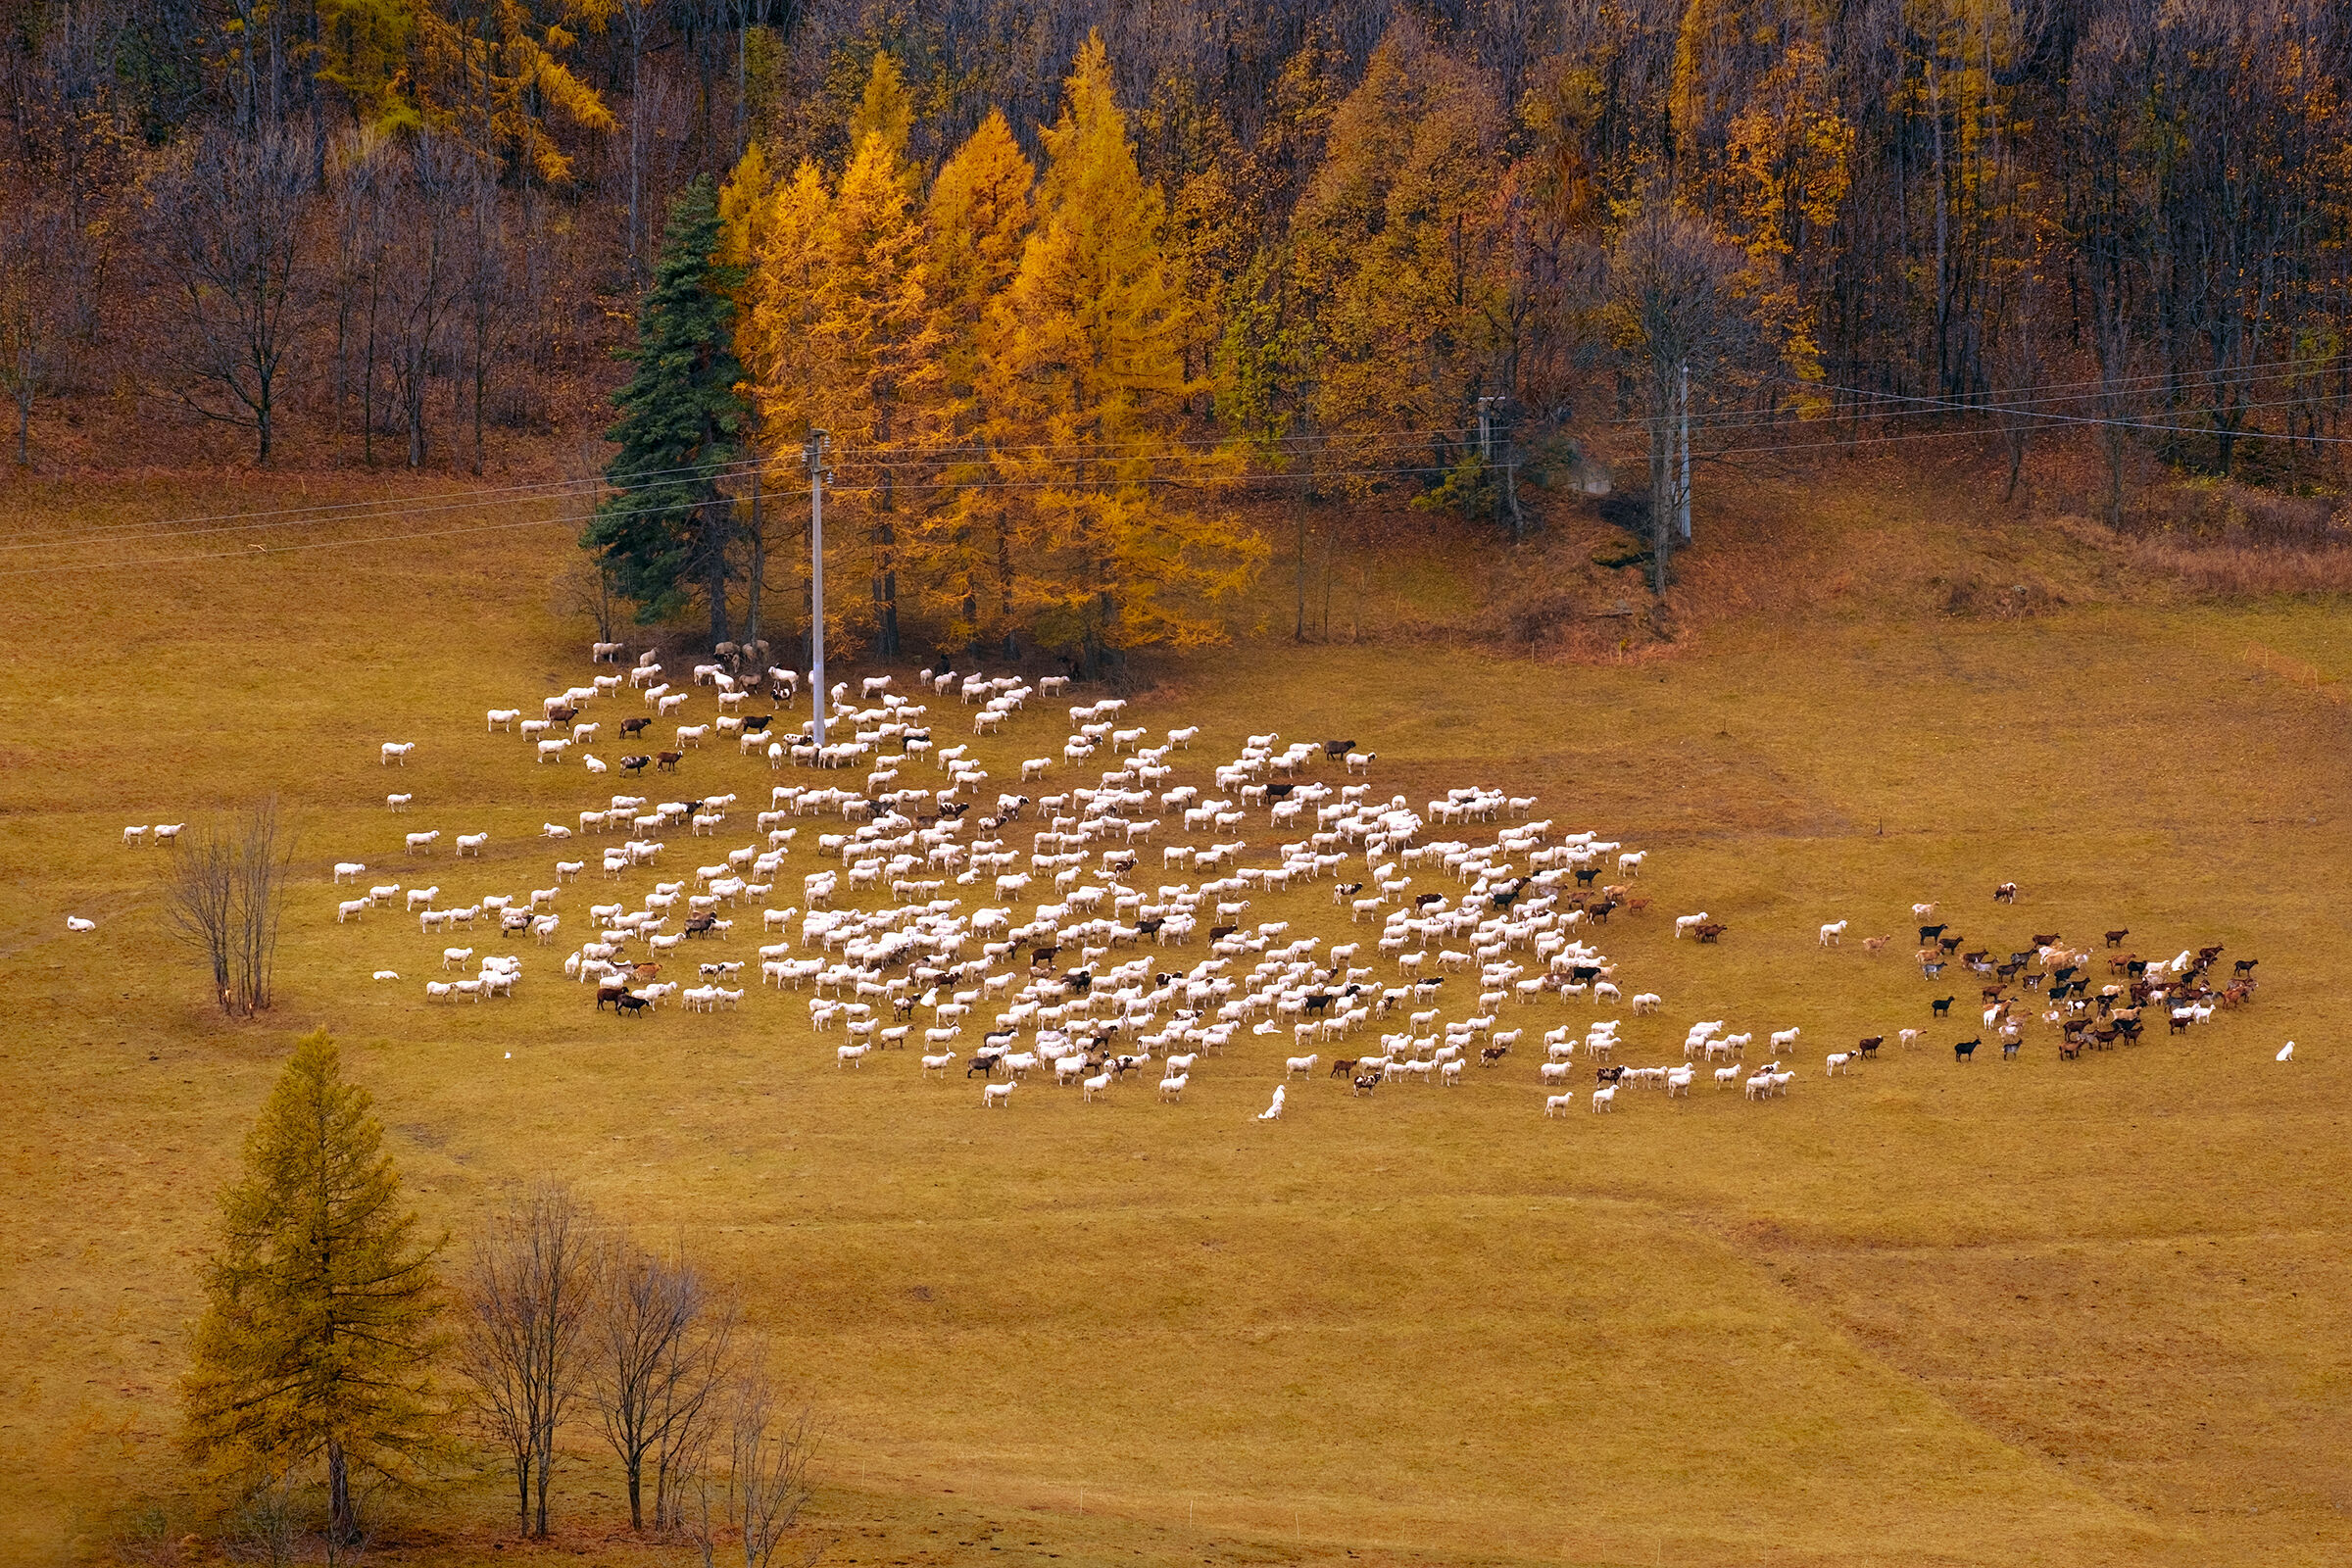 More sheep!...